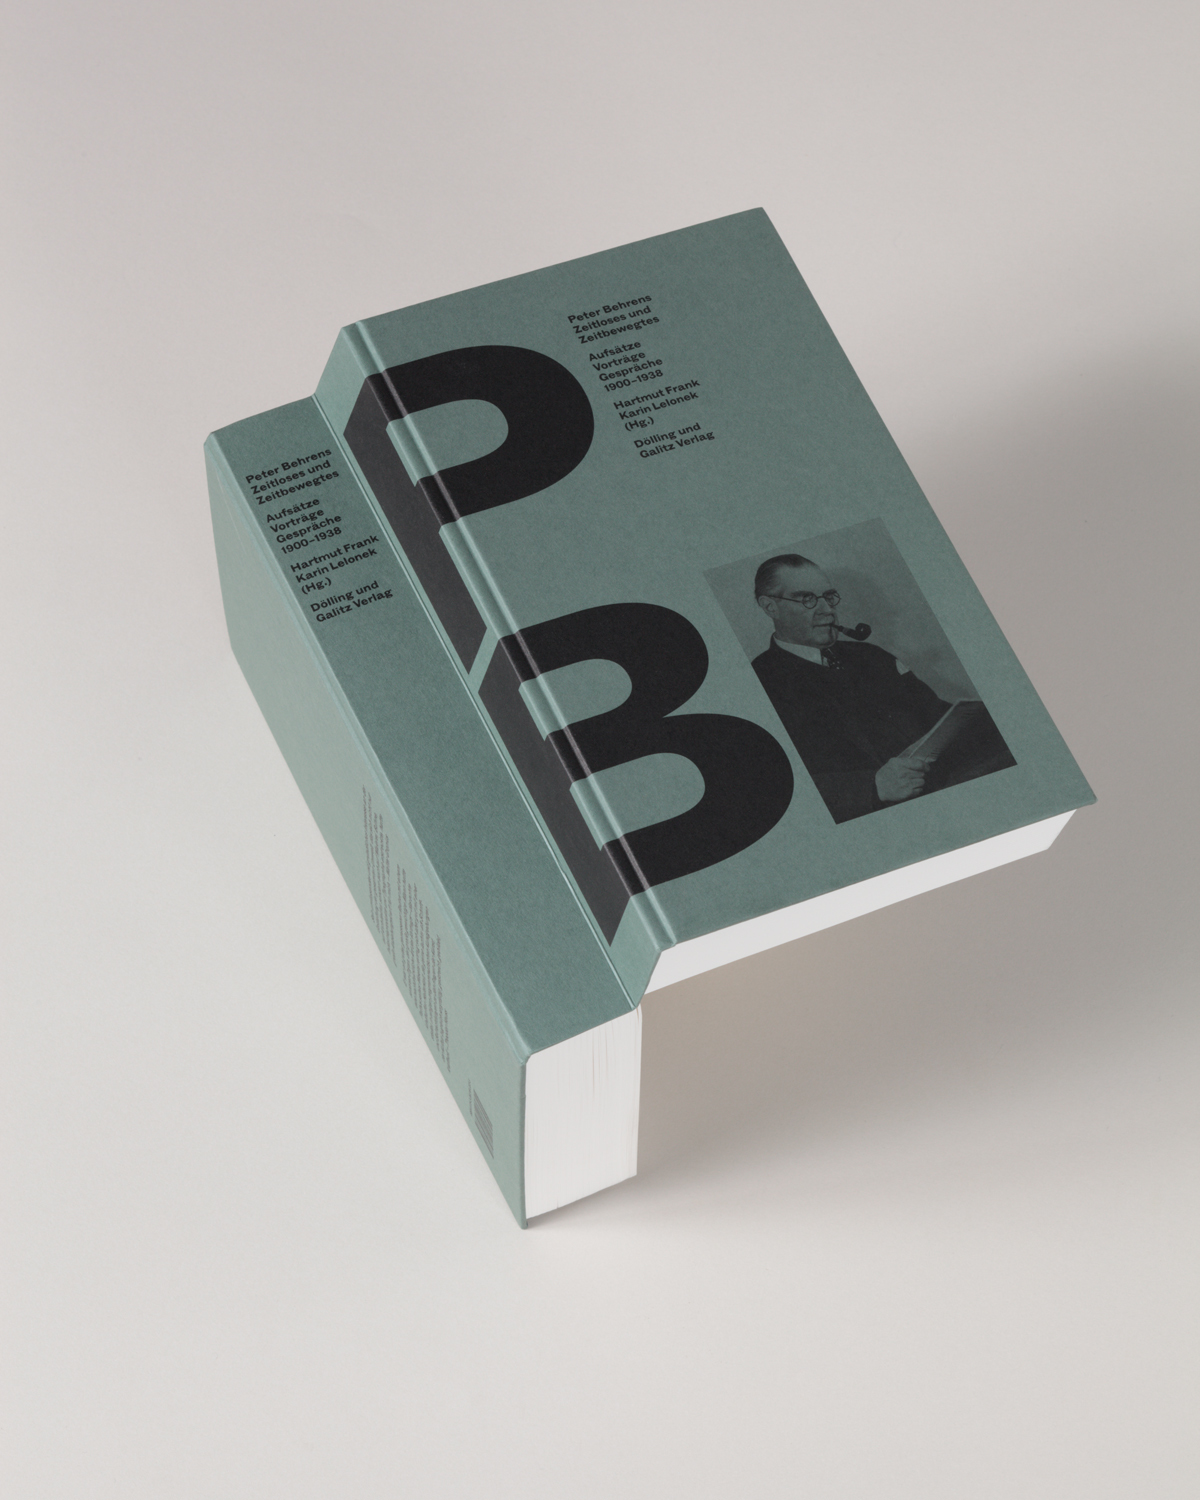 画像 世界で最も美しい本 に 触れてめくって楽しめる 世界のブックデザイン15 16 展レポート の画像5 6 Spice エンタメ特化型情報メディア スパイス